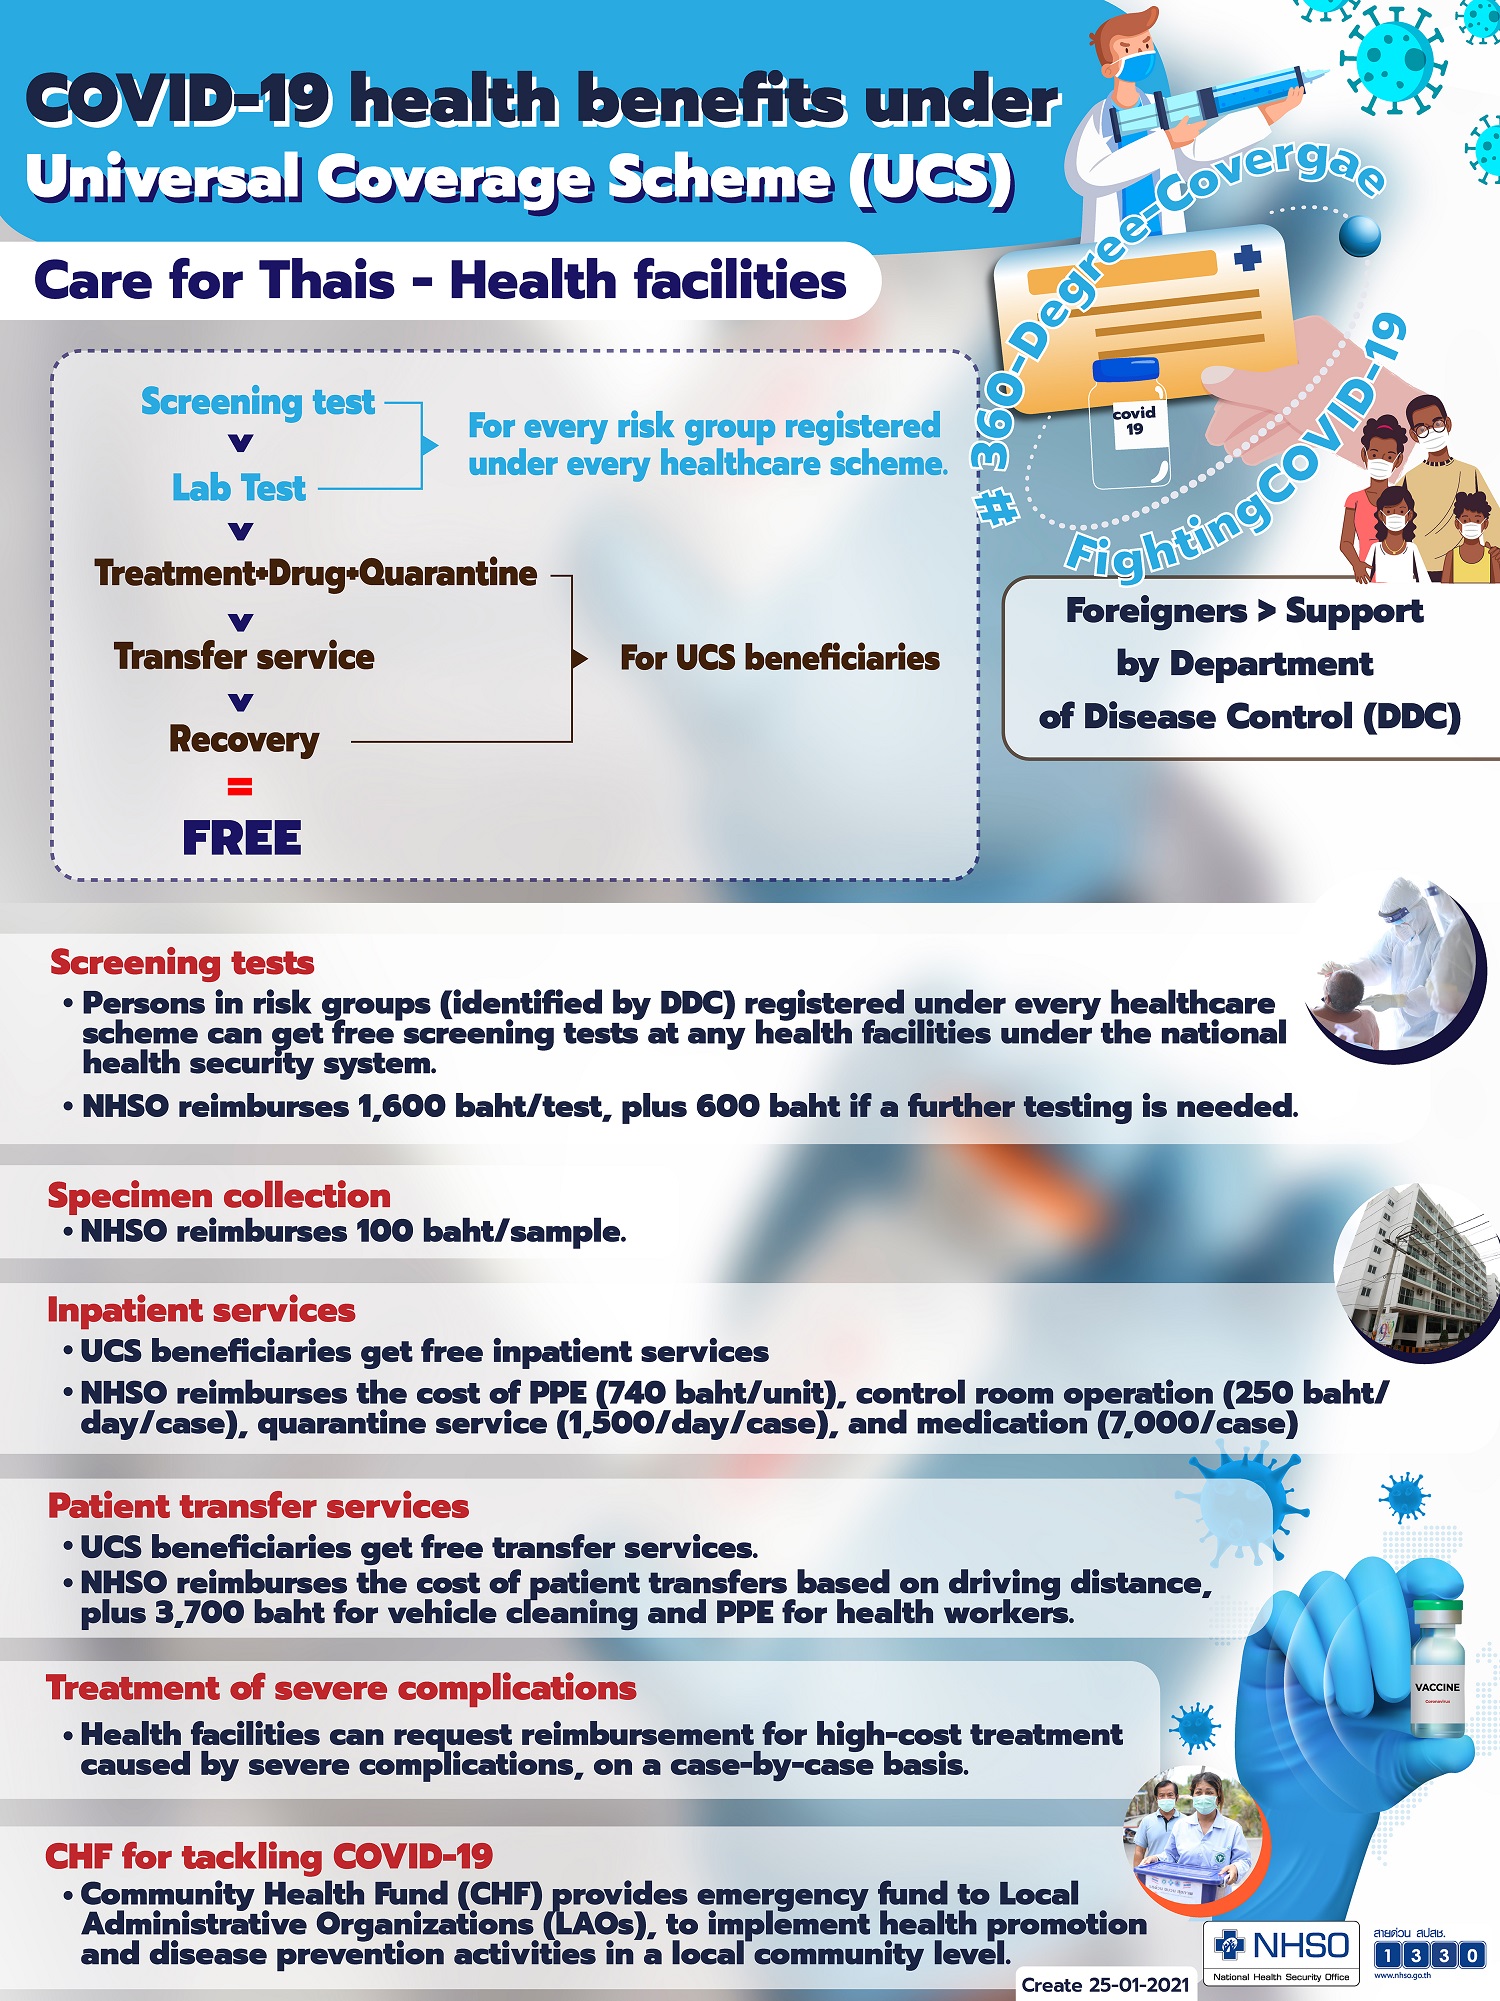 COVID-19 health benefits under Universal Coverage Scheme (UCS)